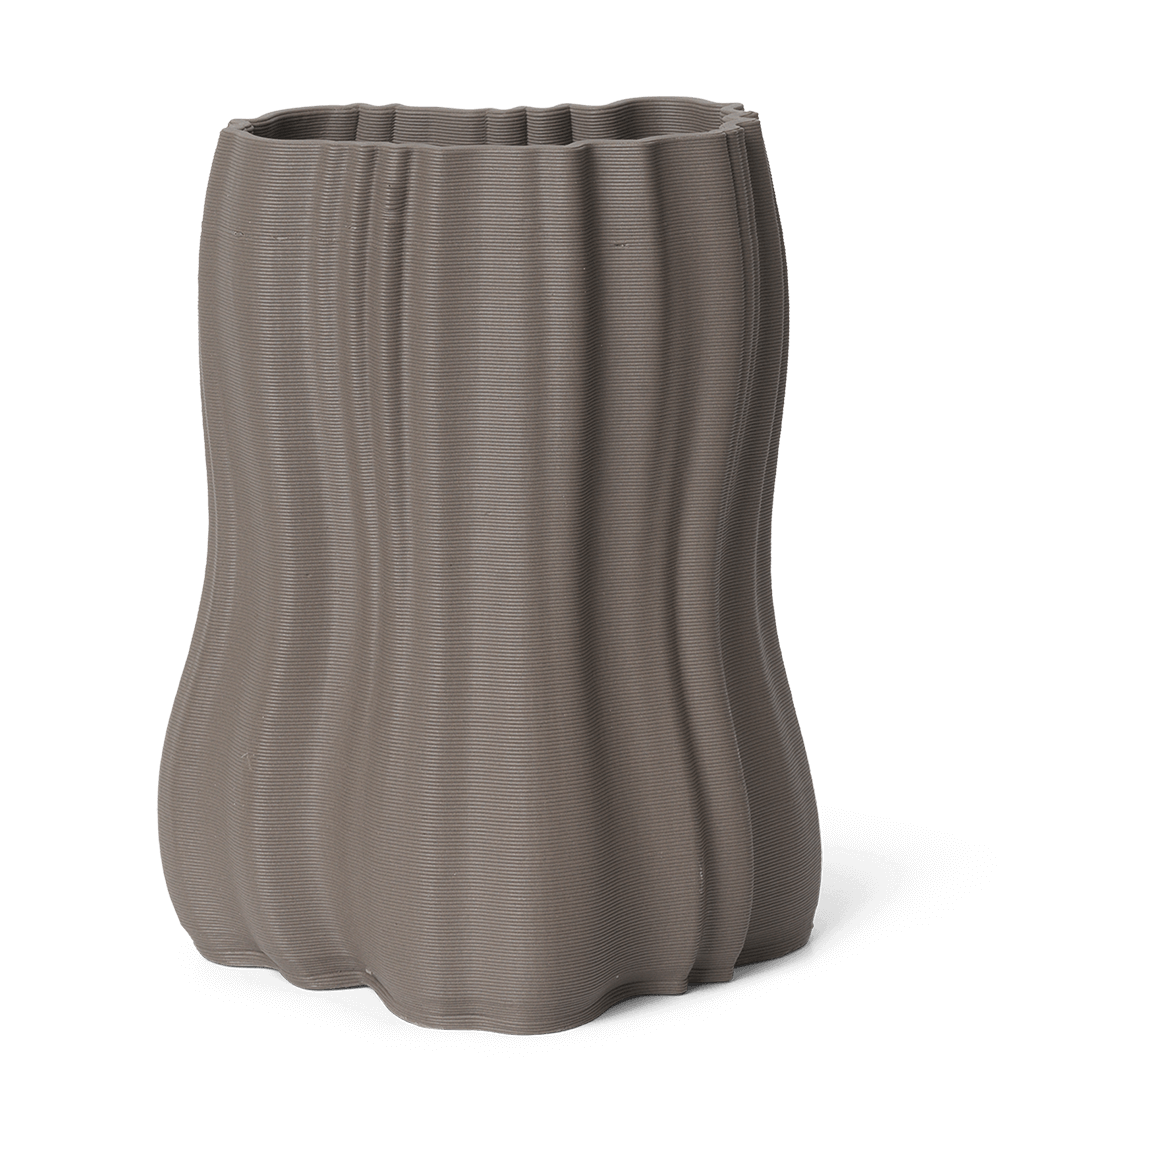 Bilde av ferm LIVING Moire vase 20 cm Anthracite